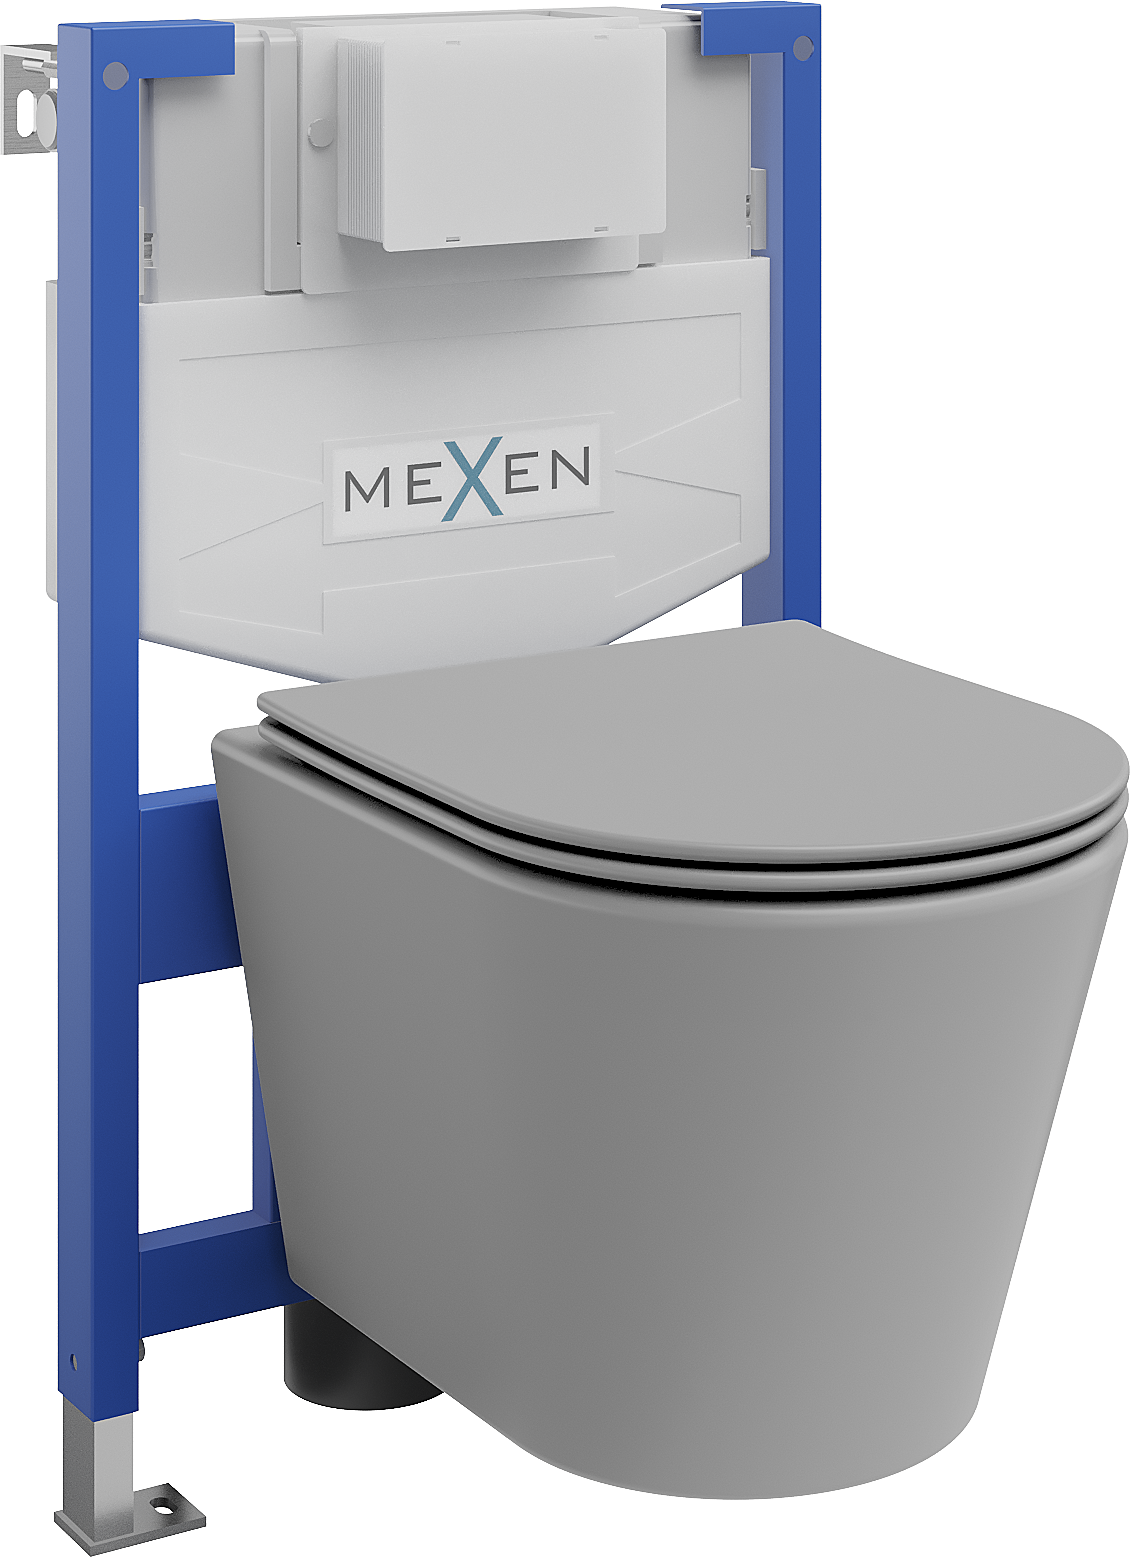 Mexen WC podomítkový set Felix XS-F stojan s WC mísou Rico a pomalu padajícím sedátkem, Světle matová šedá - 68030724061